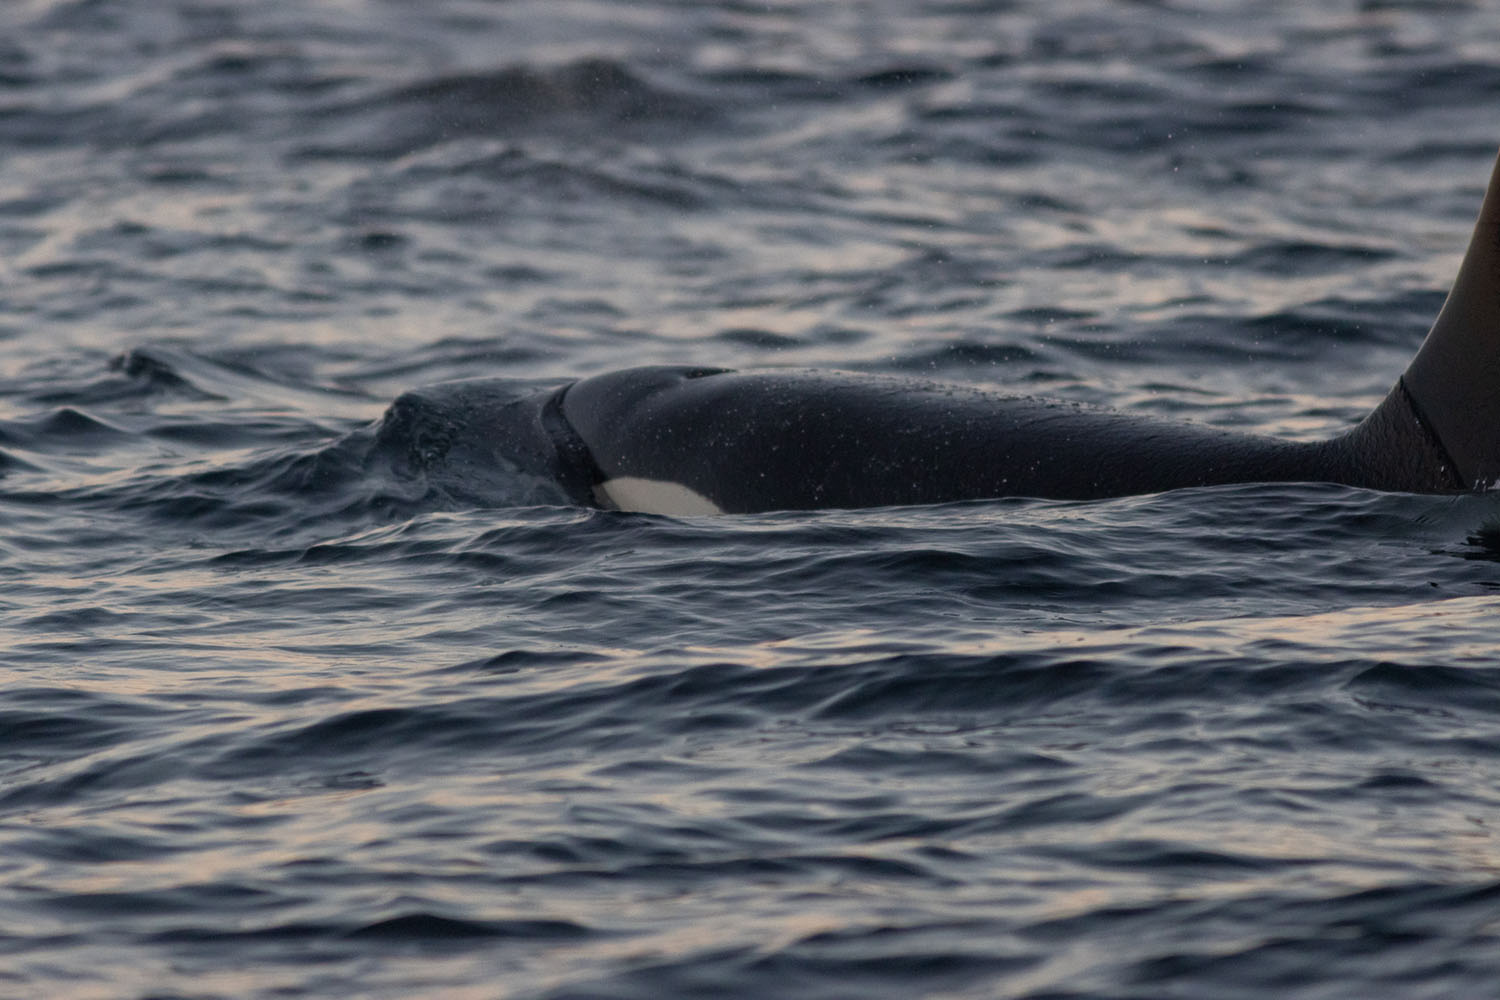 voyage scientifique - orques et baleines a bosse de norvege 54